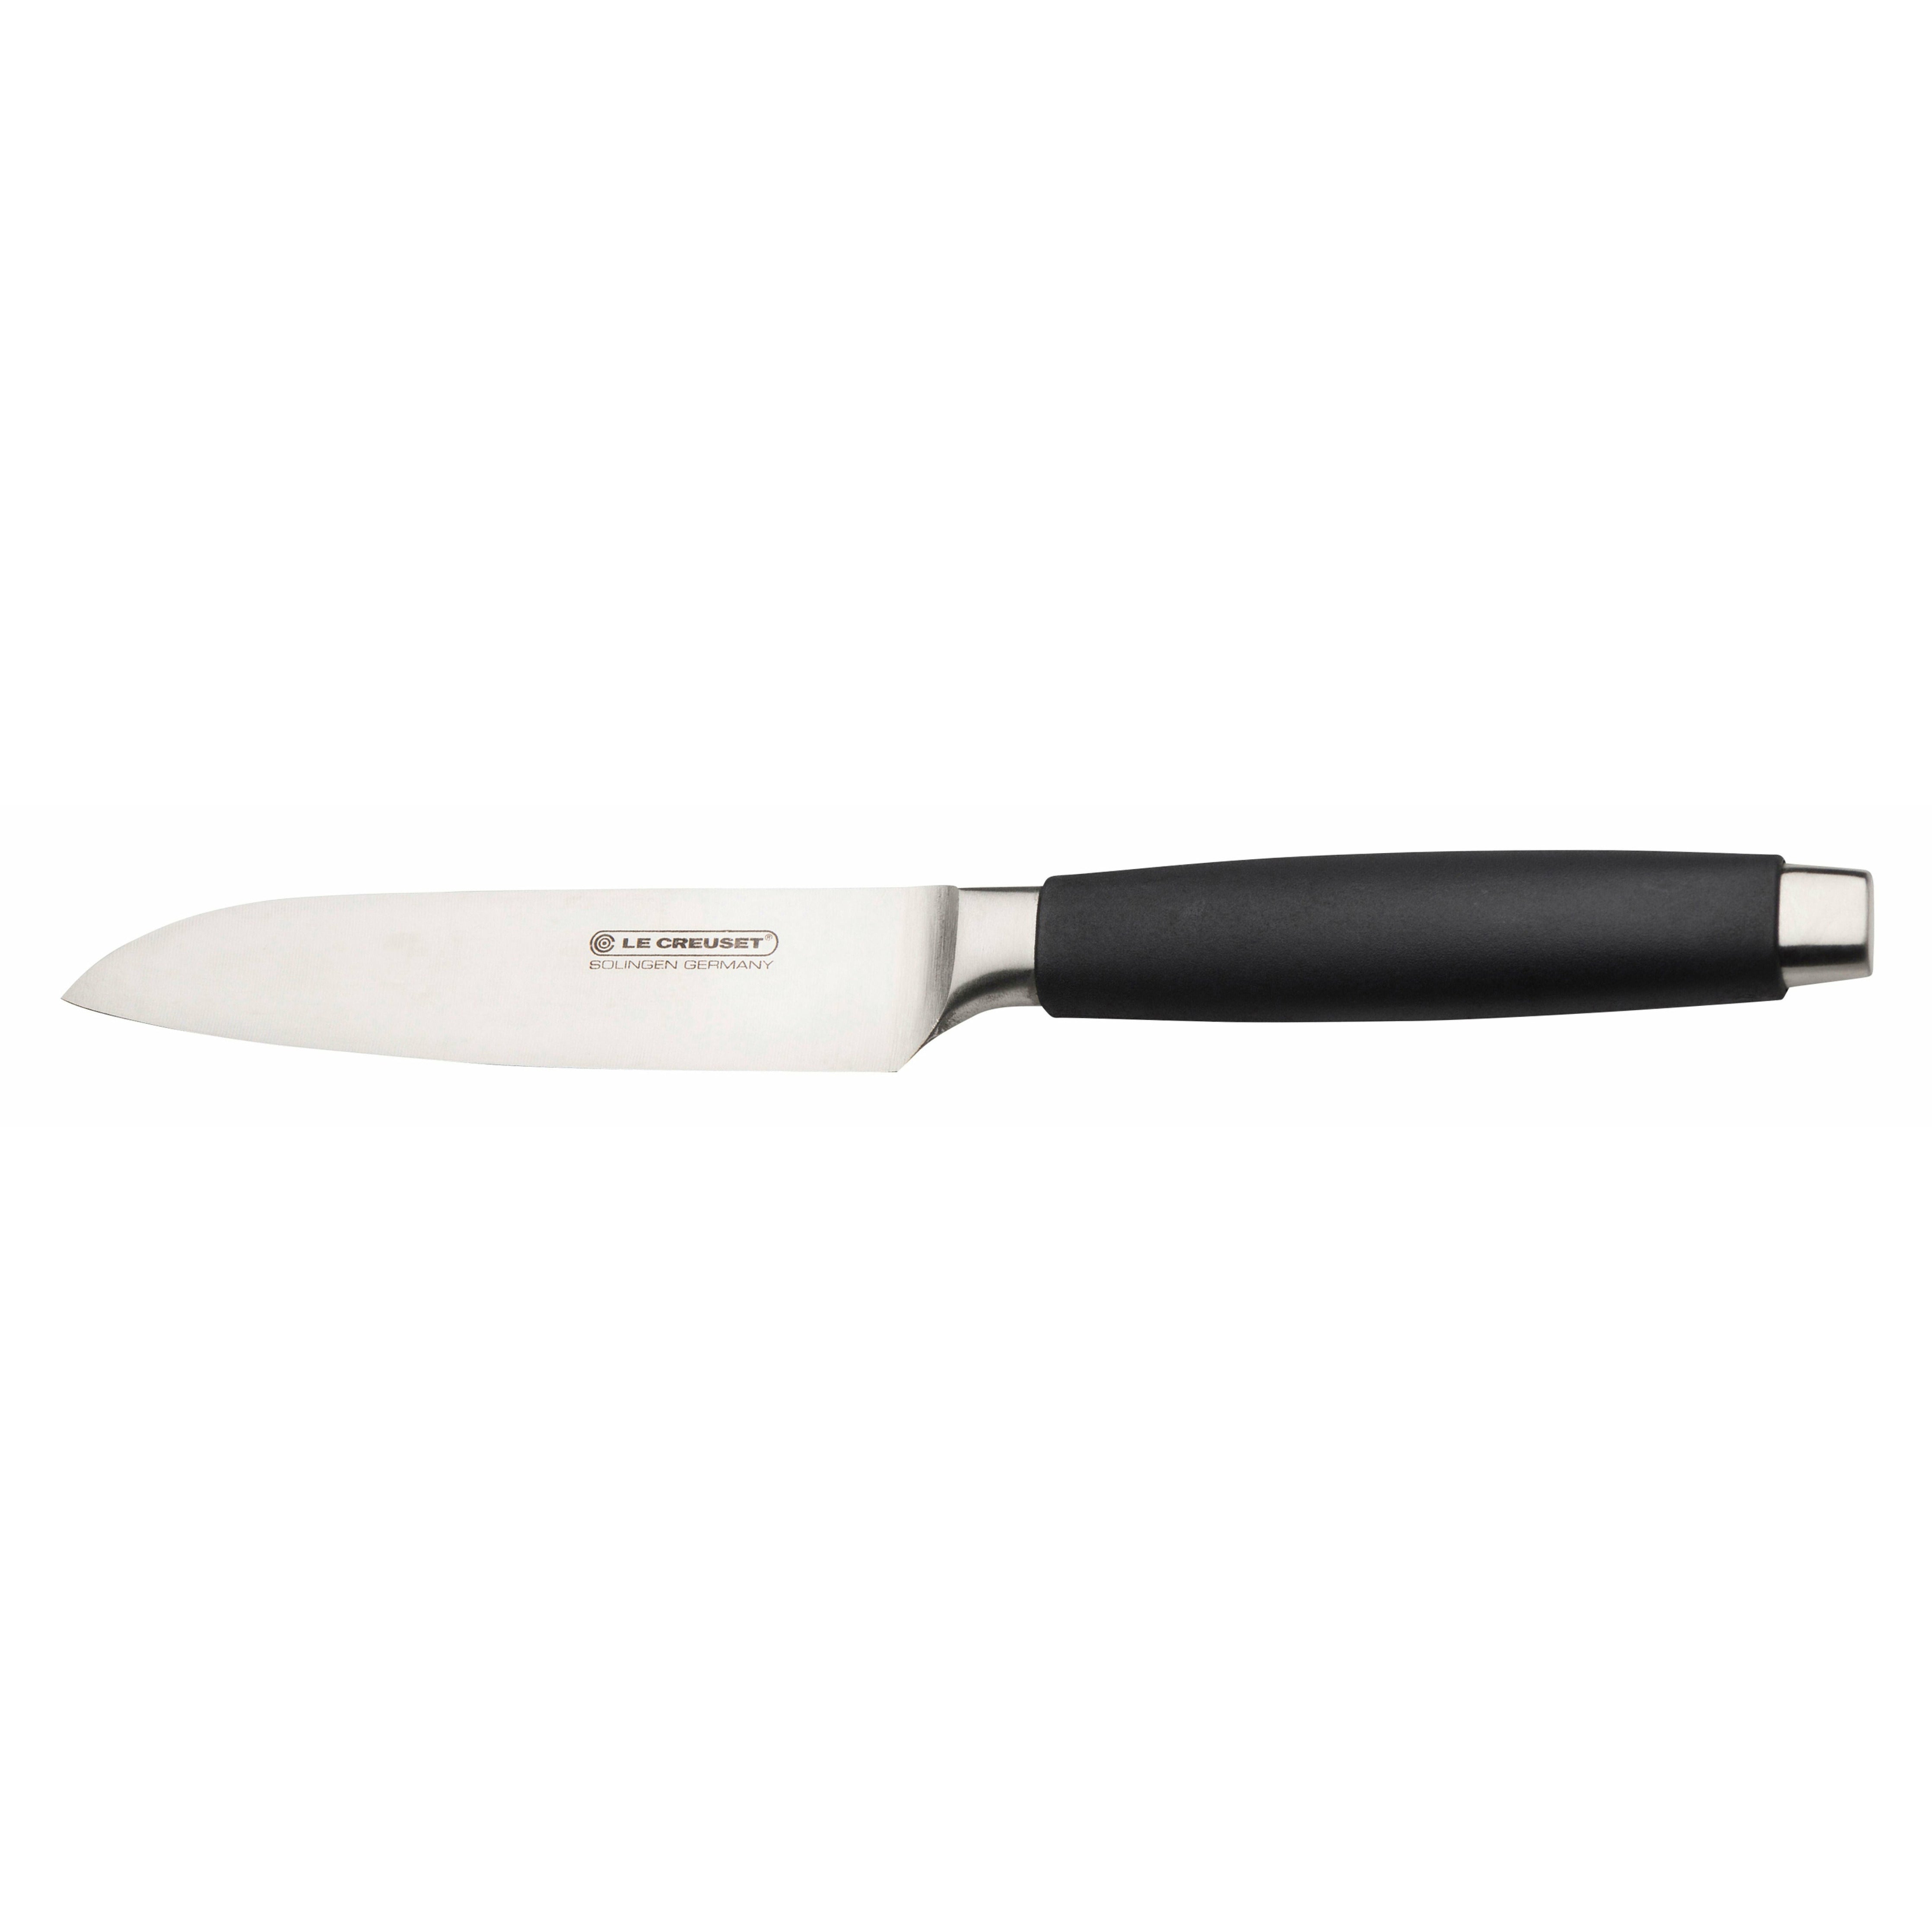 Le Creuset Standard du couteau Santoku avec poignée noire, 13 cm